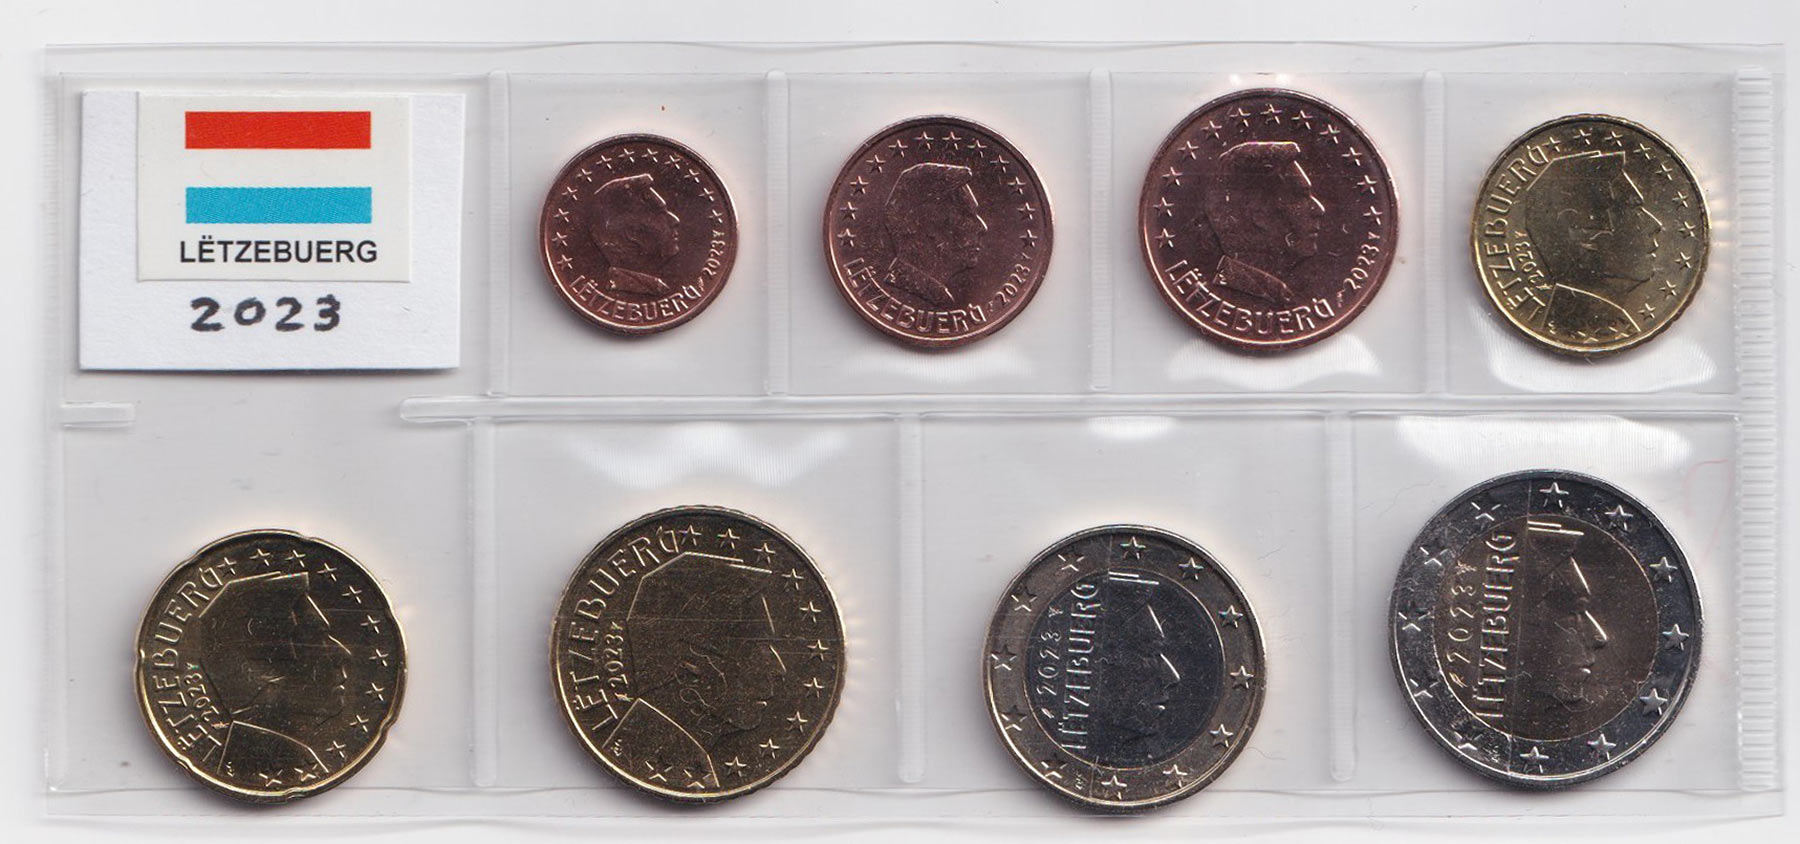 2023 - Serie 8 monete euro LUSSEMBURGO Fior di Conio